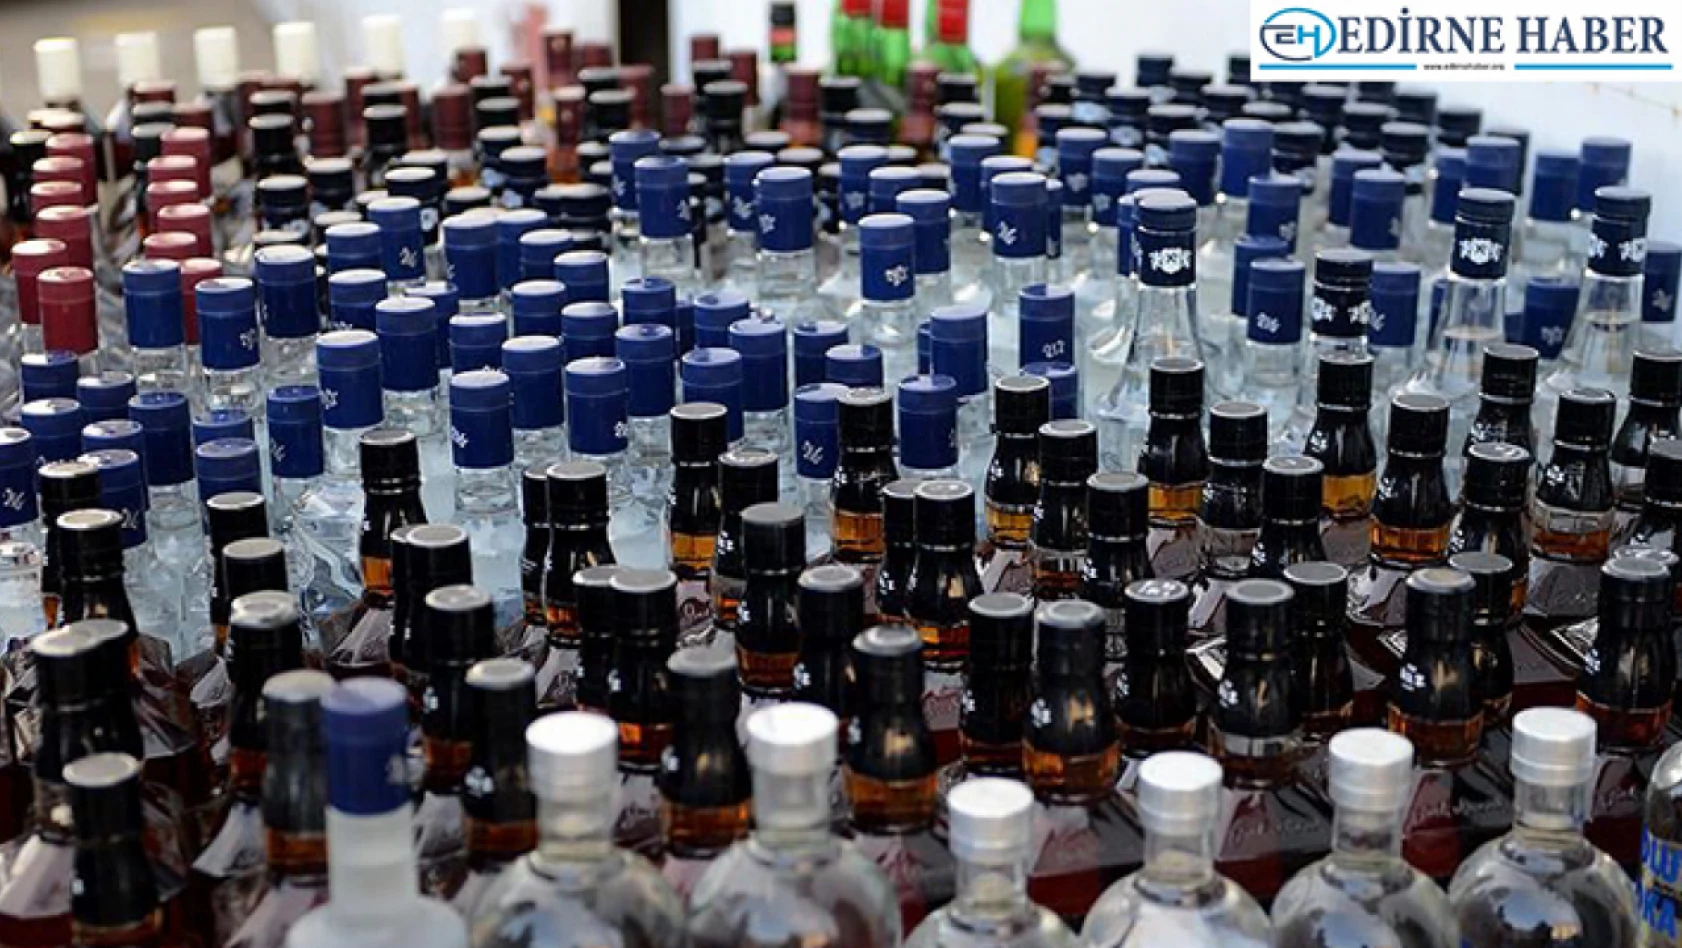 Edirne'de gümrük kaçağı 54 şişe içki ele geçirildi